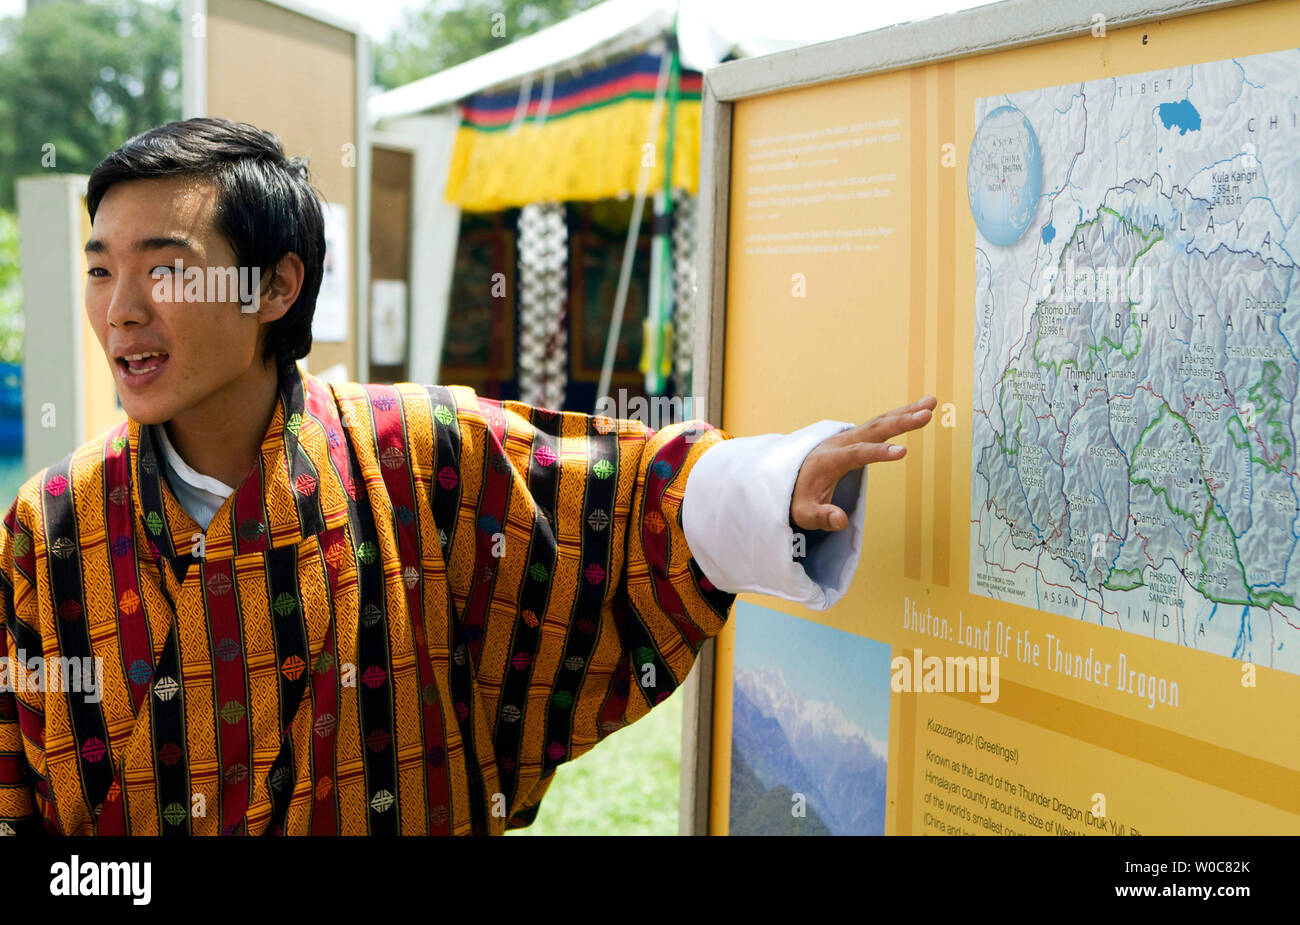 Jigyel Ugyen Wangchuck, principe del Bhutan parla di diverse regioni geografiche del Bhutan durante lo Smithsonian Institution è annuale quarantaduesima Folklife Festival, che esplorerà la cultura unica del Regno del Bhutan, commemorare il cinquantesimo anniversario della Nazionale dell'aria e lo spazio Amministrazione (NASA), ed esplorare la musica, cibo e vino dello stato del Texas nel National Mall di Washington il 25 giugno 2008. Il festival si svolge da giugno 25-29 e dal 2 al 6 luglio 2008. (UPI foto/Patrick D. McDermott) Foto Stock